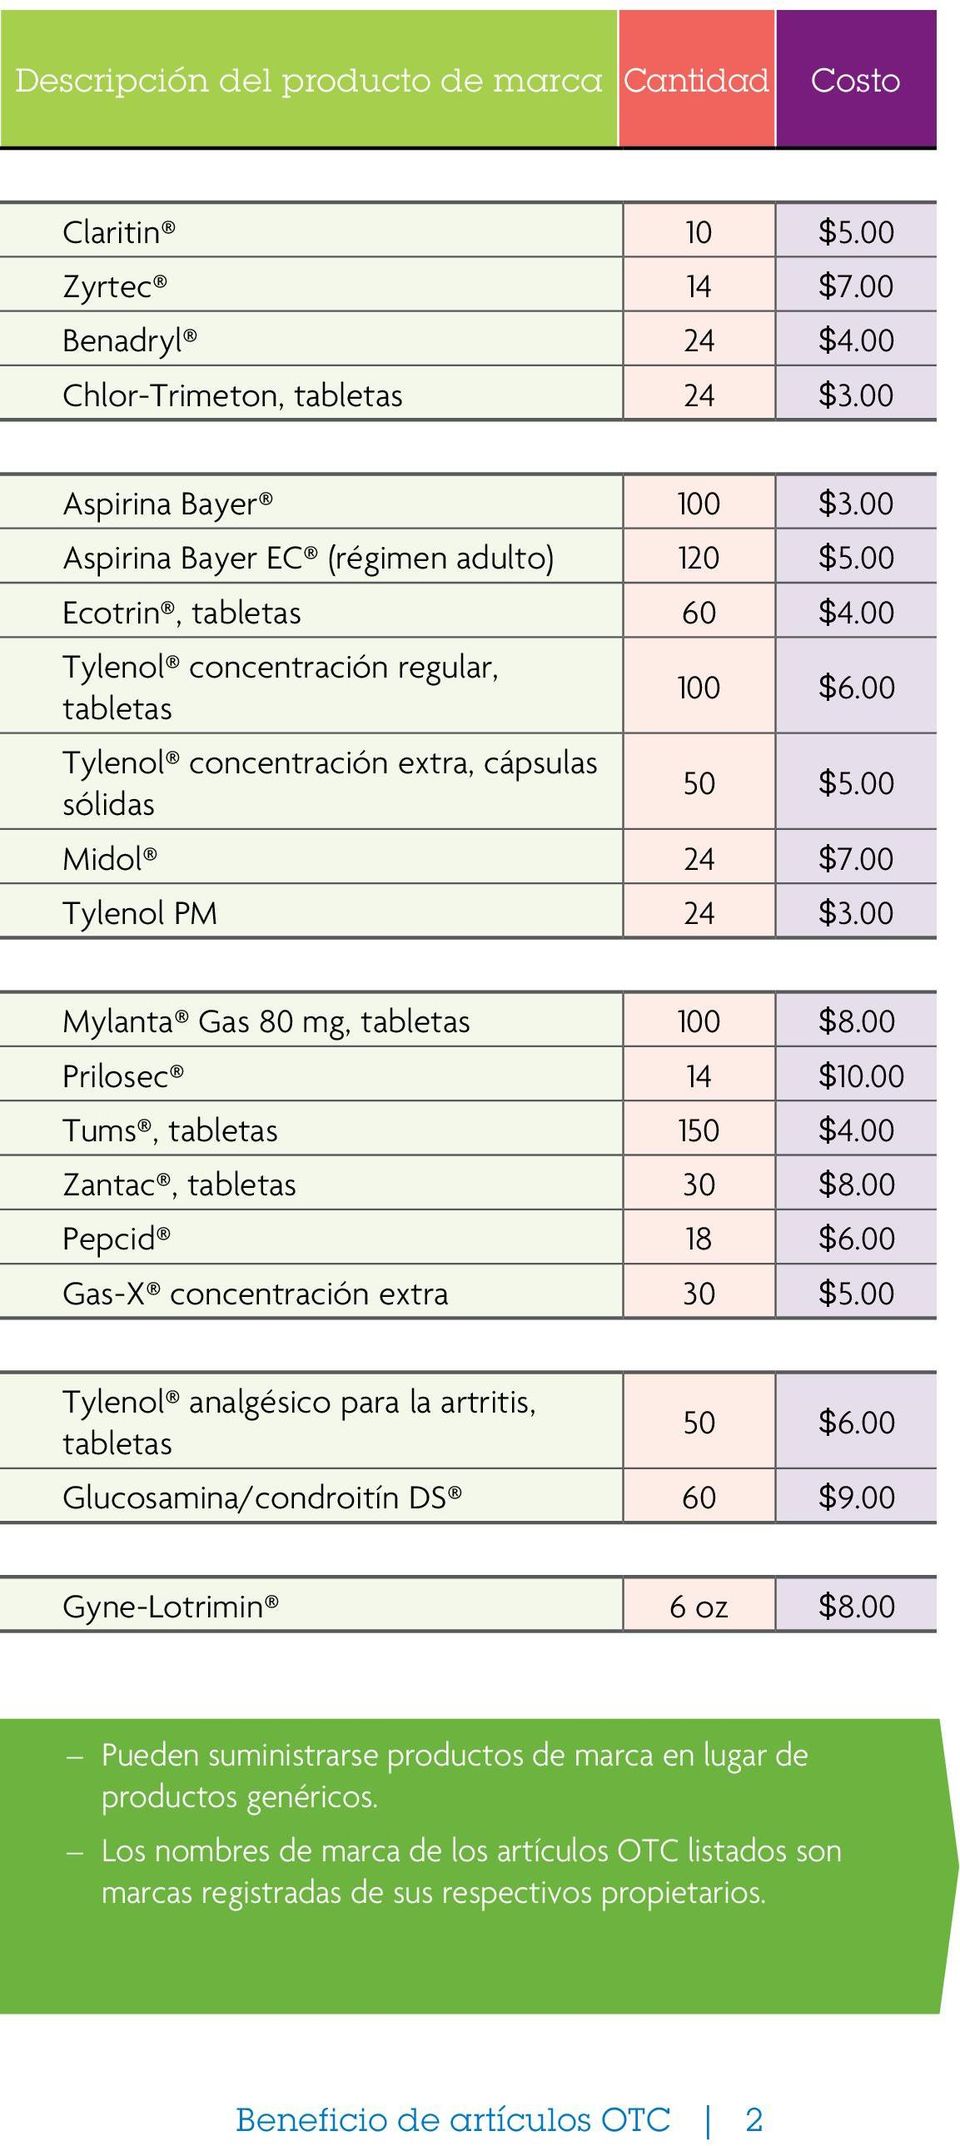 00 Tylenol PM 24 $3.00 Mylanta Gas 80 mg, tabletas 100 $8.00 Prilosec 14 $10.00 Tums, tabletas 150 $4.00 Zantac, tabletas 30 $8.00 Pepcid 18 $6.00 Gas-X concentración extra 30 $5.